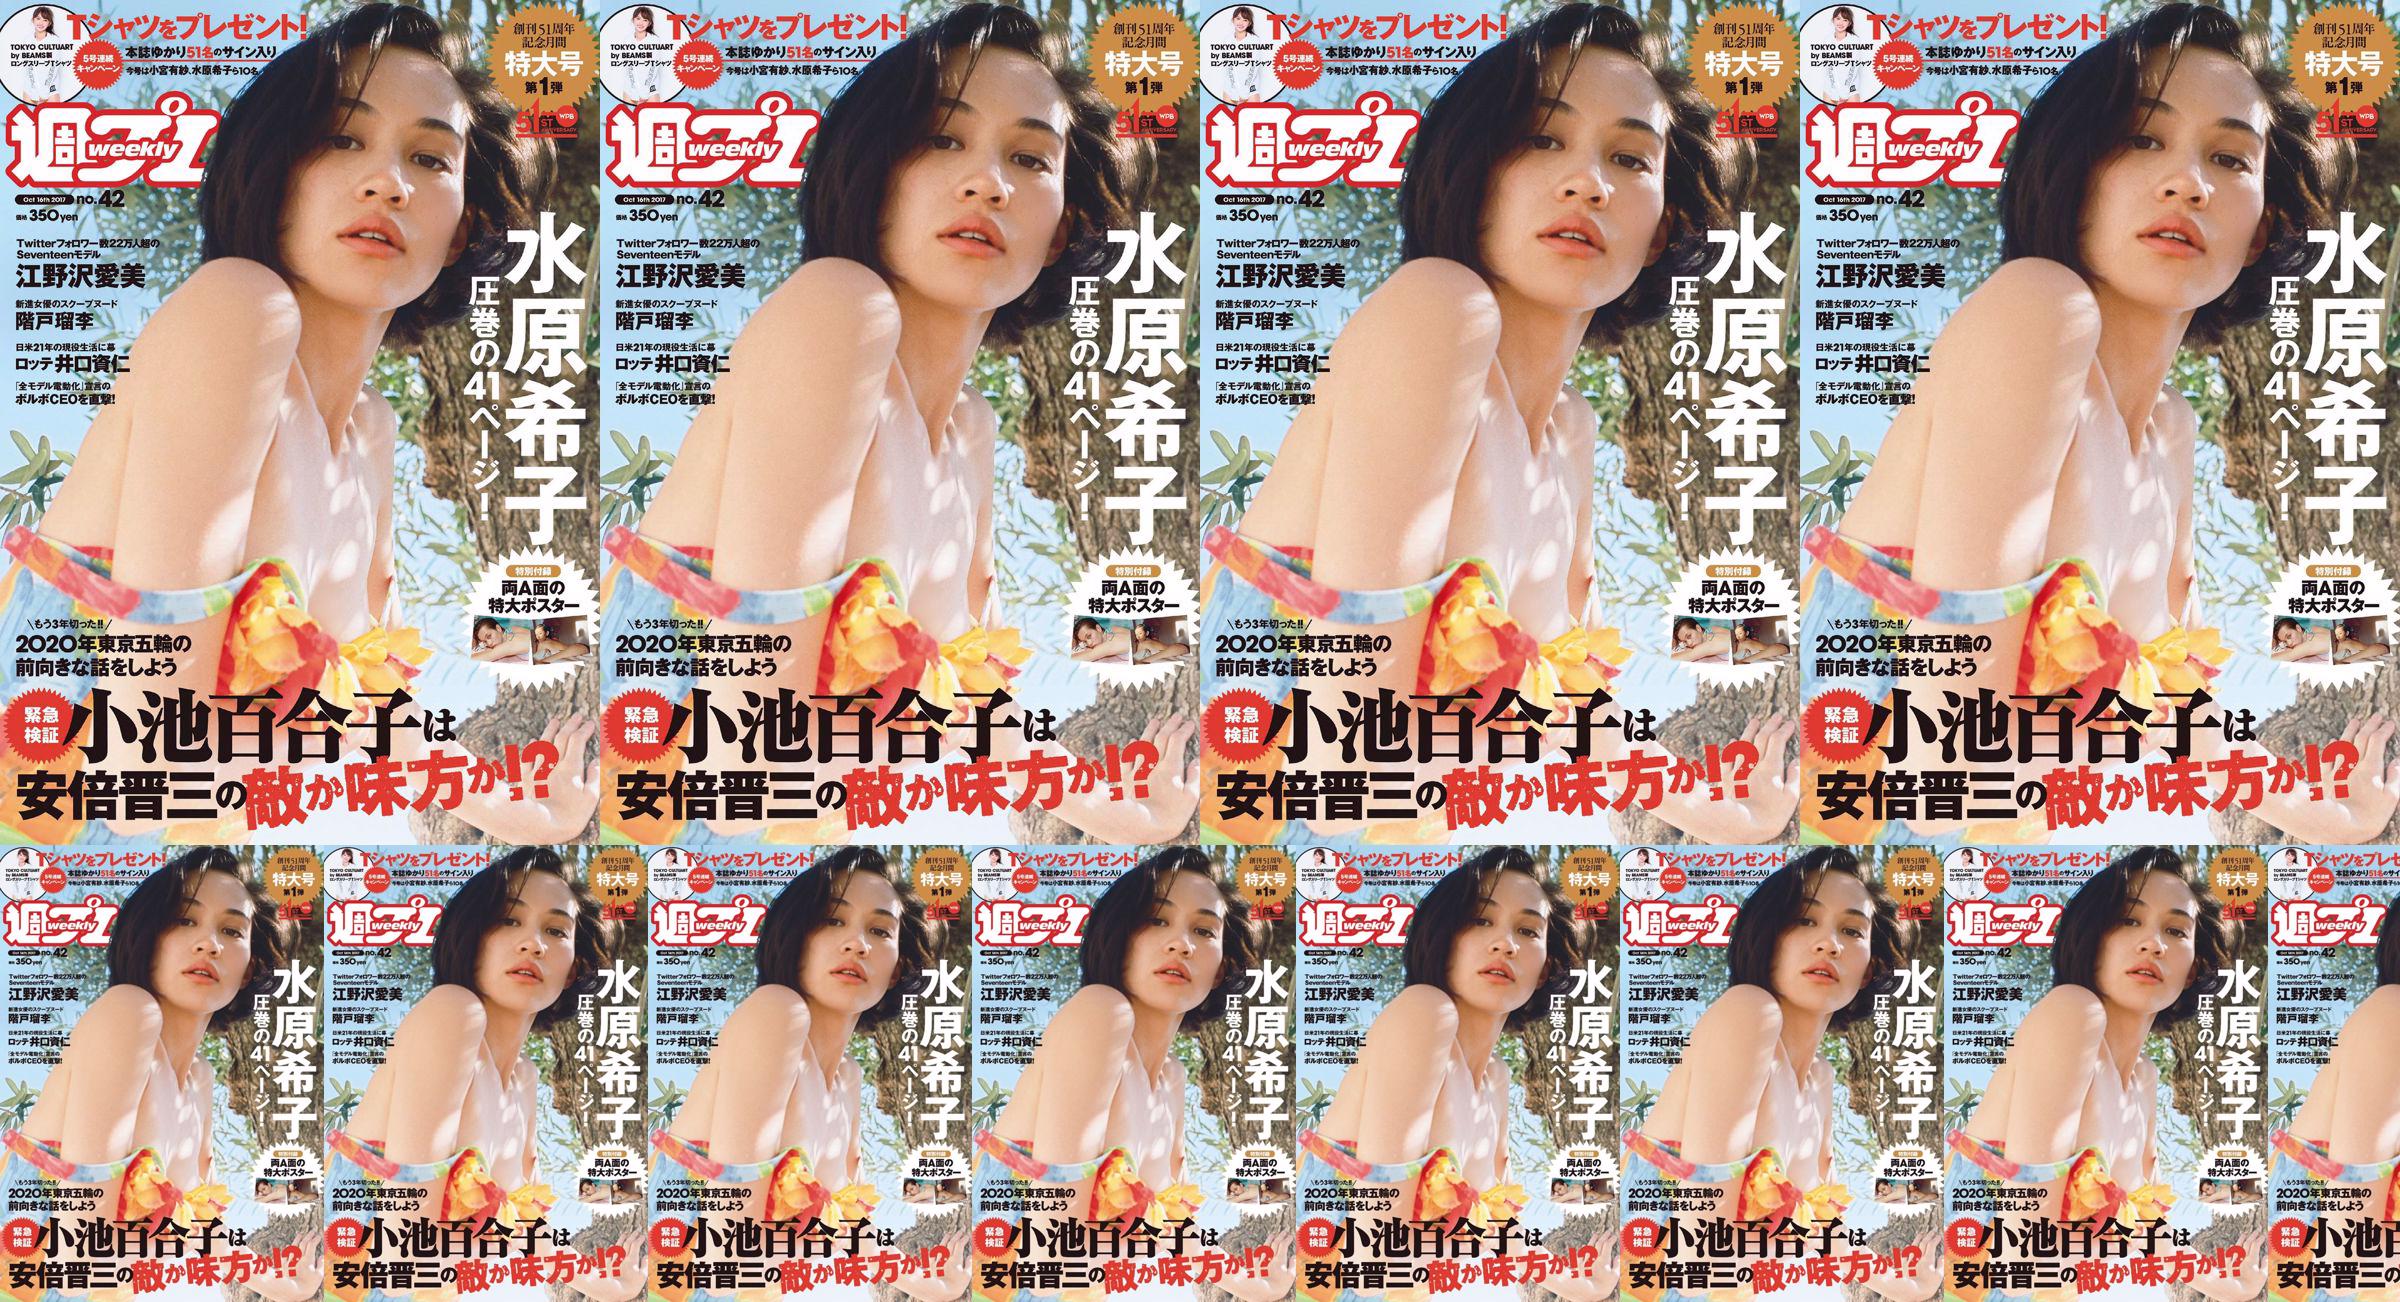 Kiko Mizuhara Manami Enosawa Serina Fukui Miu Nakamura Ruri Shinato [Weekly Playboy] 2017 No.42 Photo Magazine No.bb9381 Trang 1